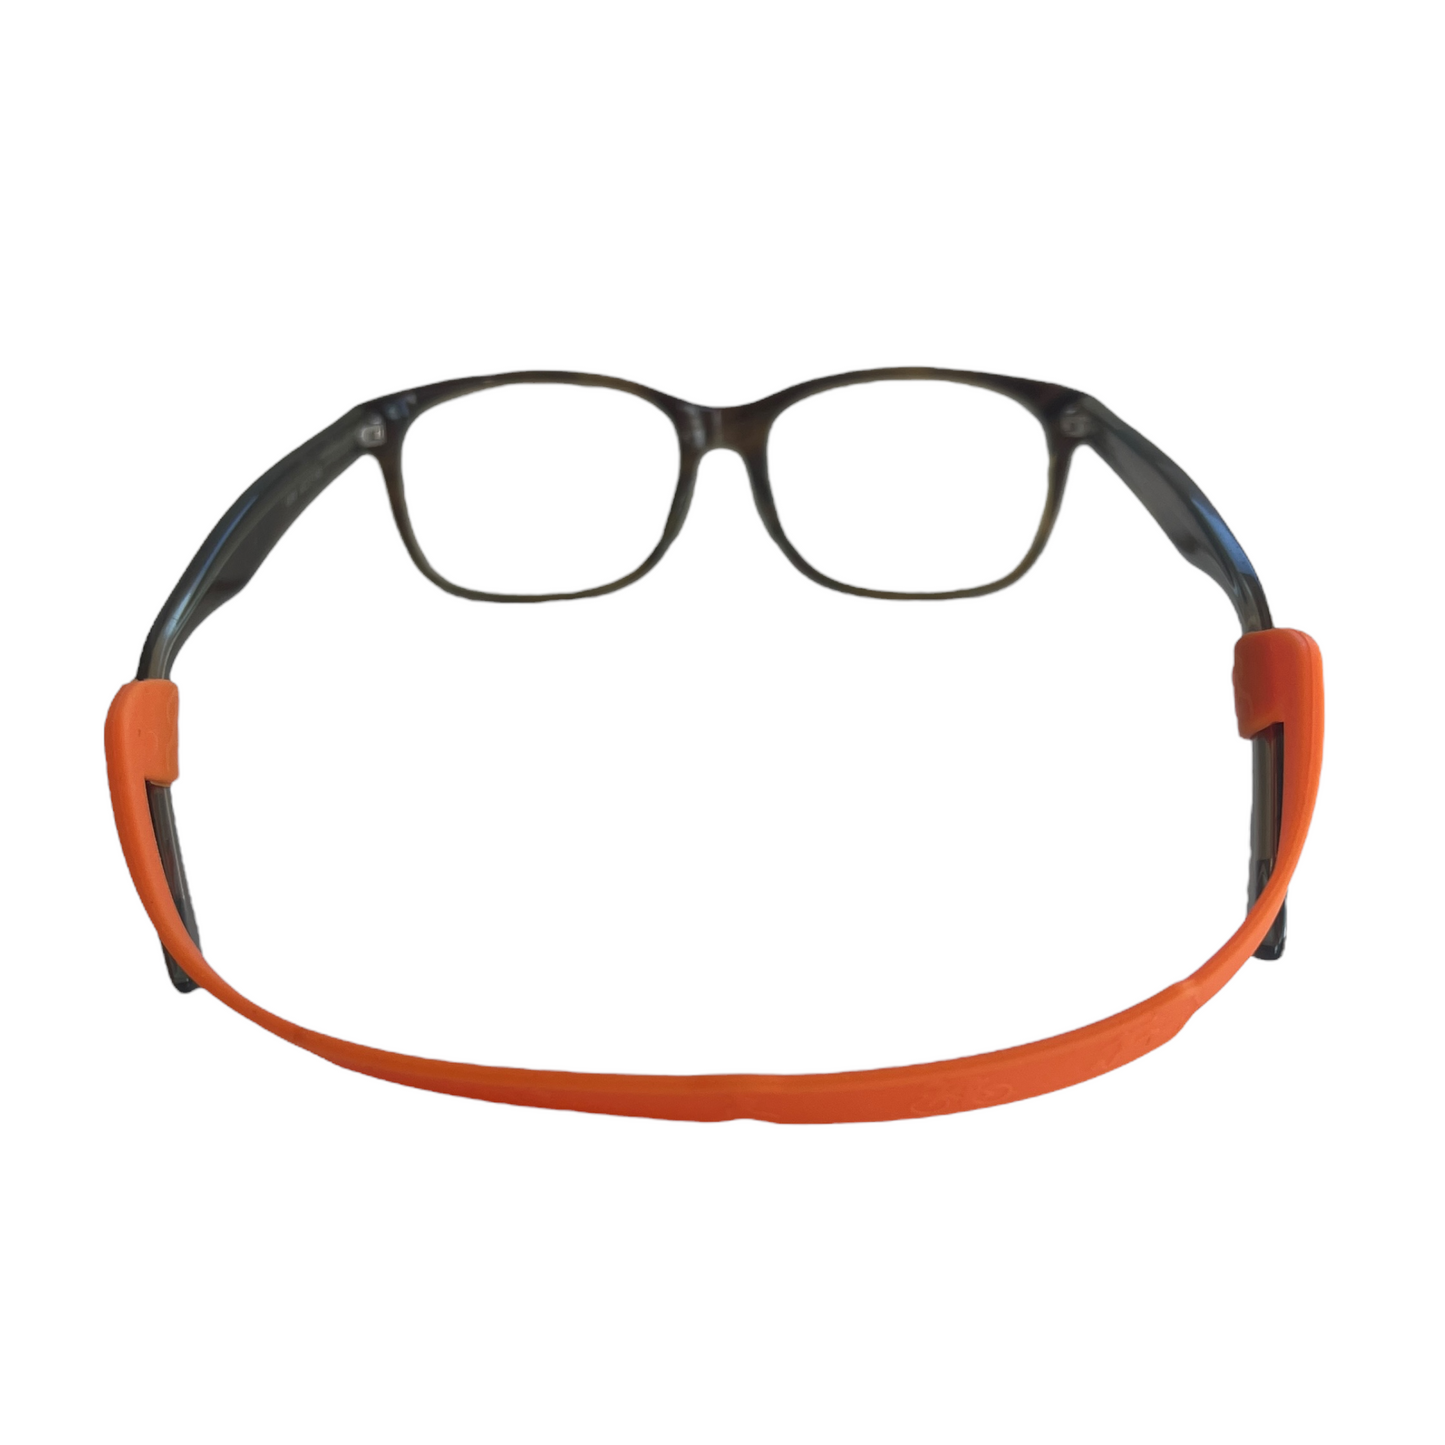 Secure Glasses Head Strap, Silicone